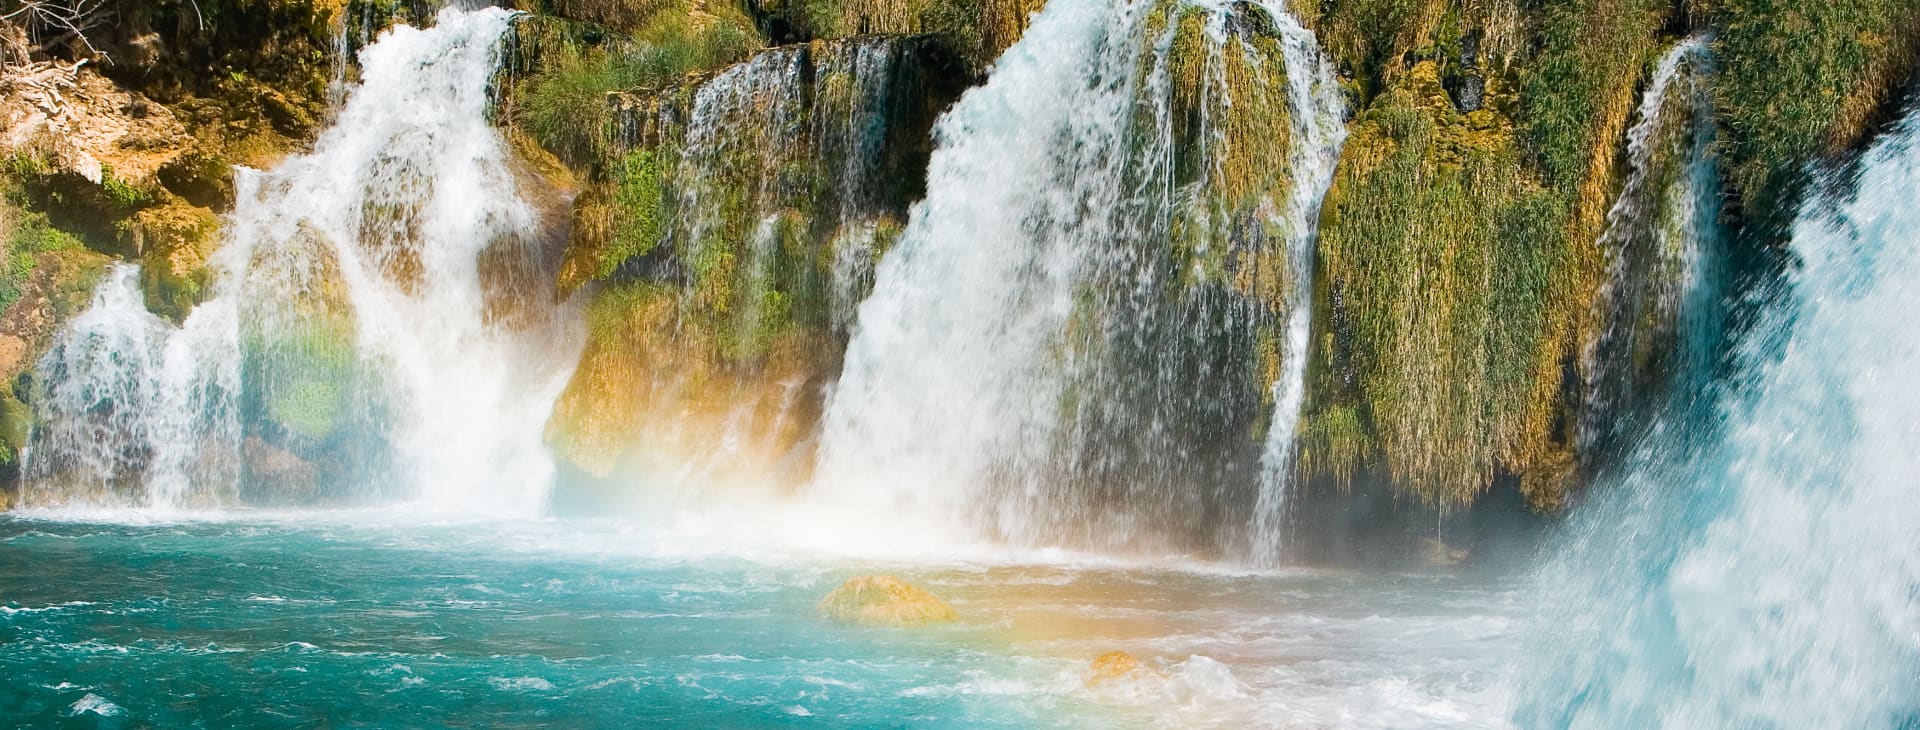 Krka vattenfall och nationalpark samt Trogir